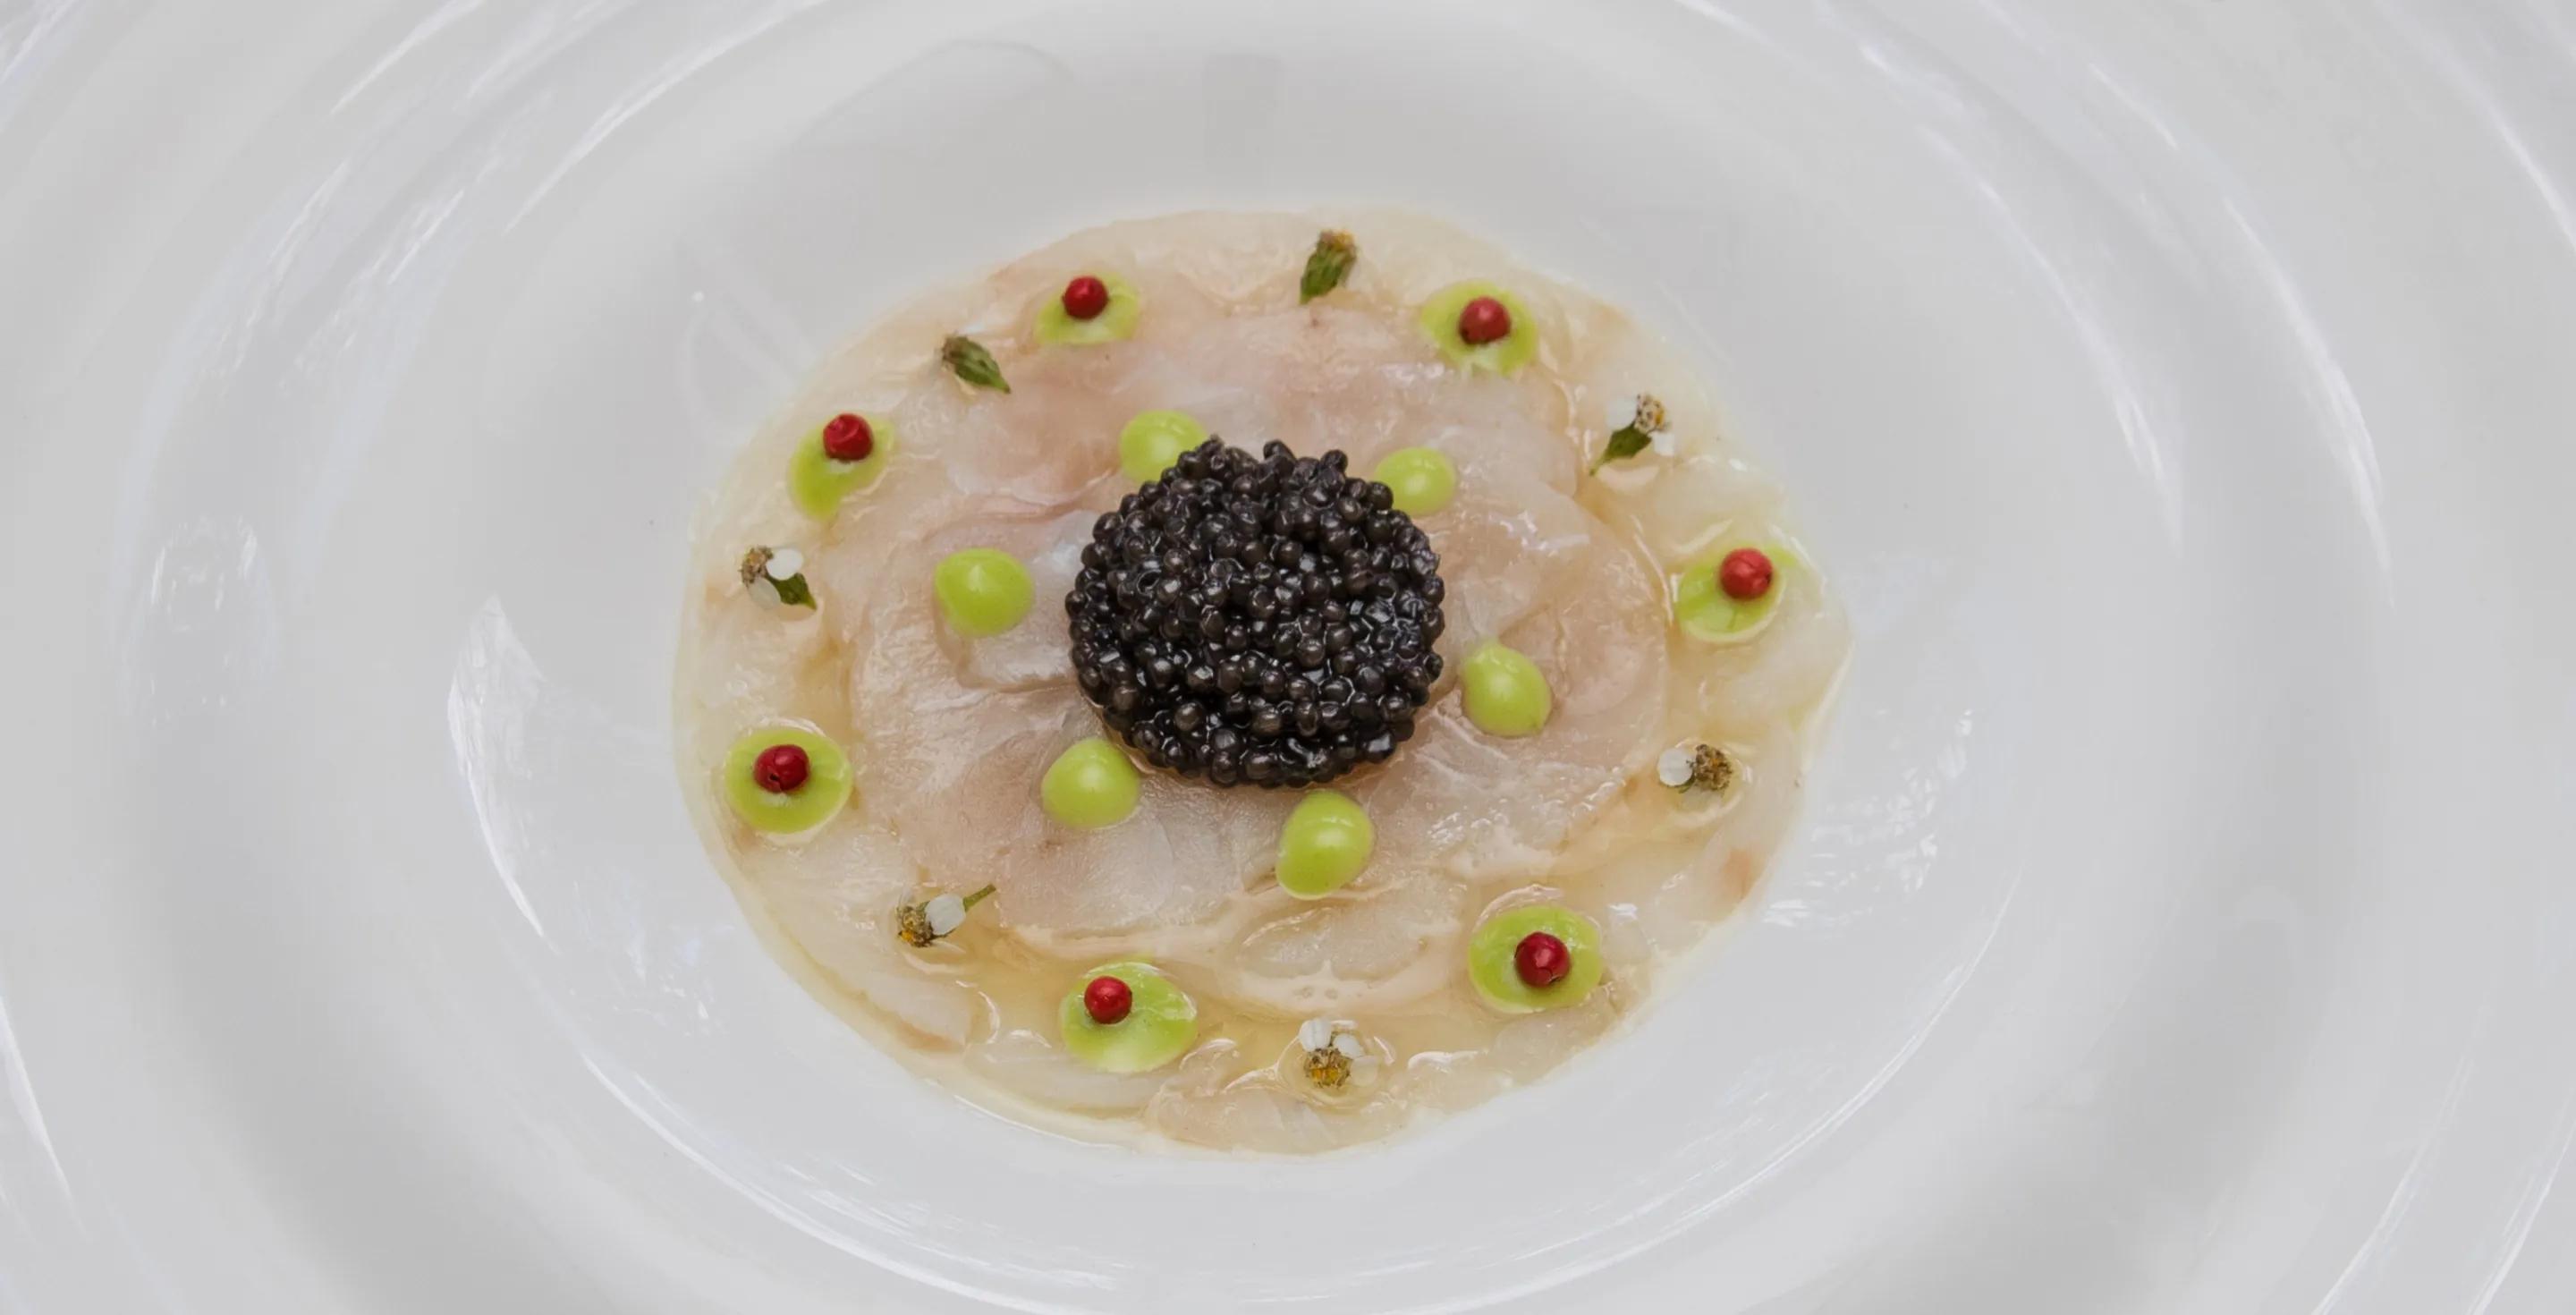 Scallop Carpaccio with Baeri Caviar